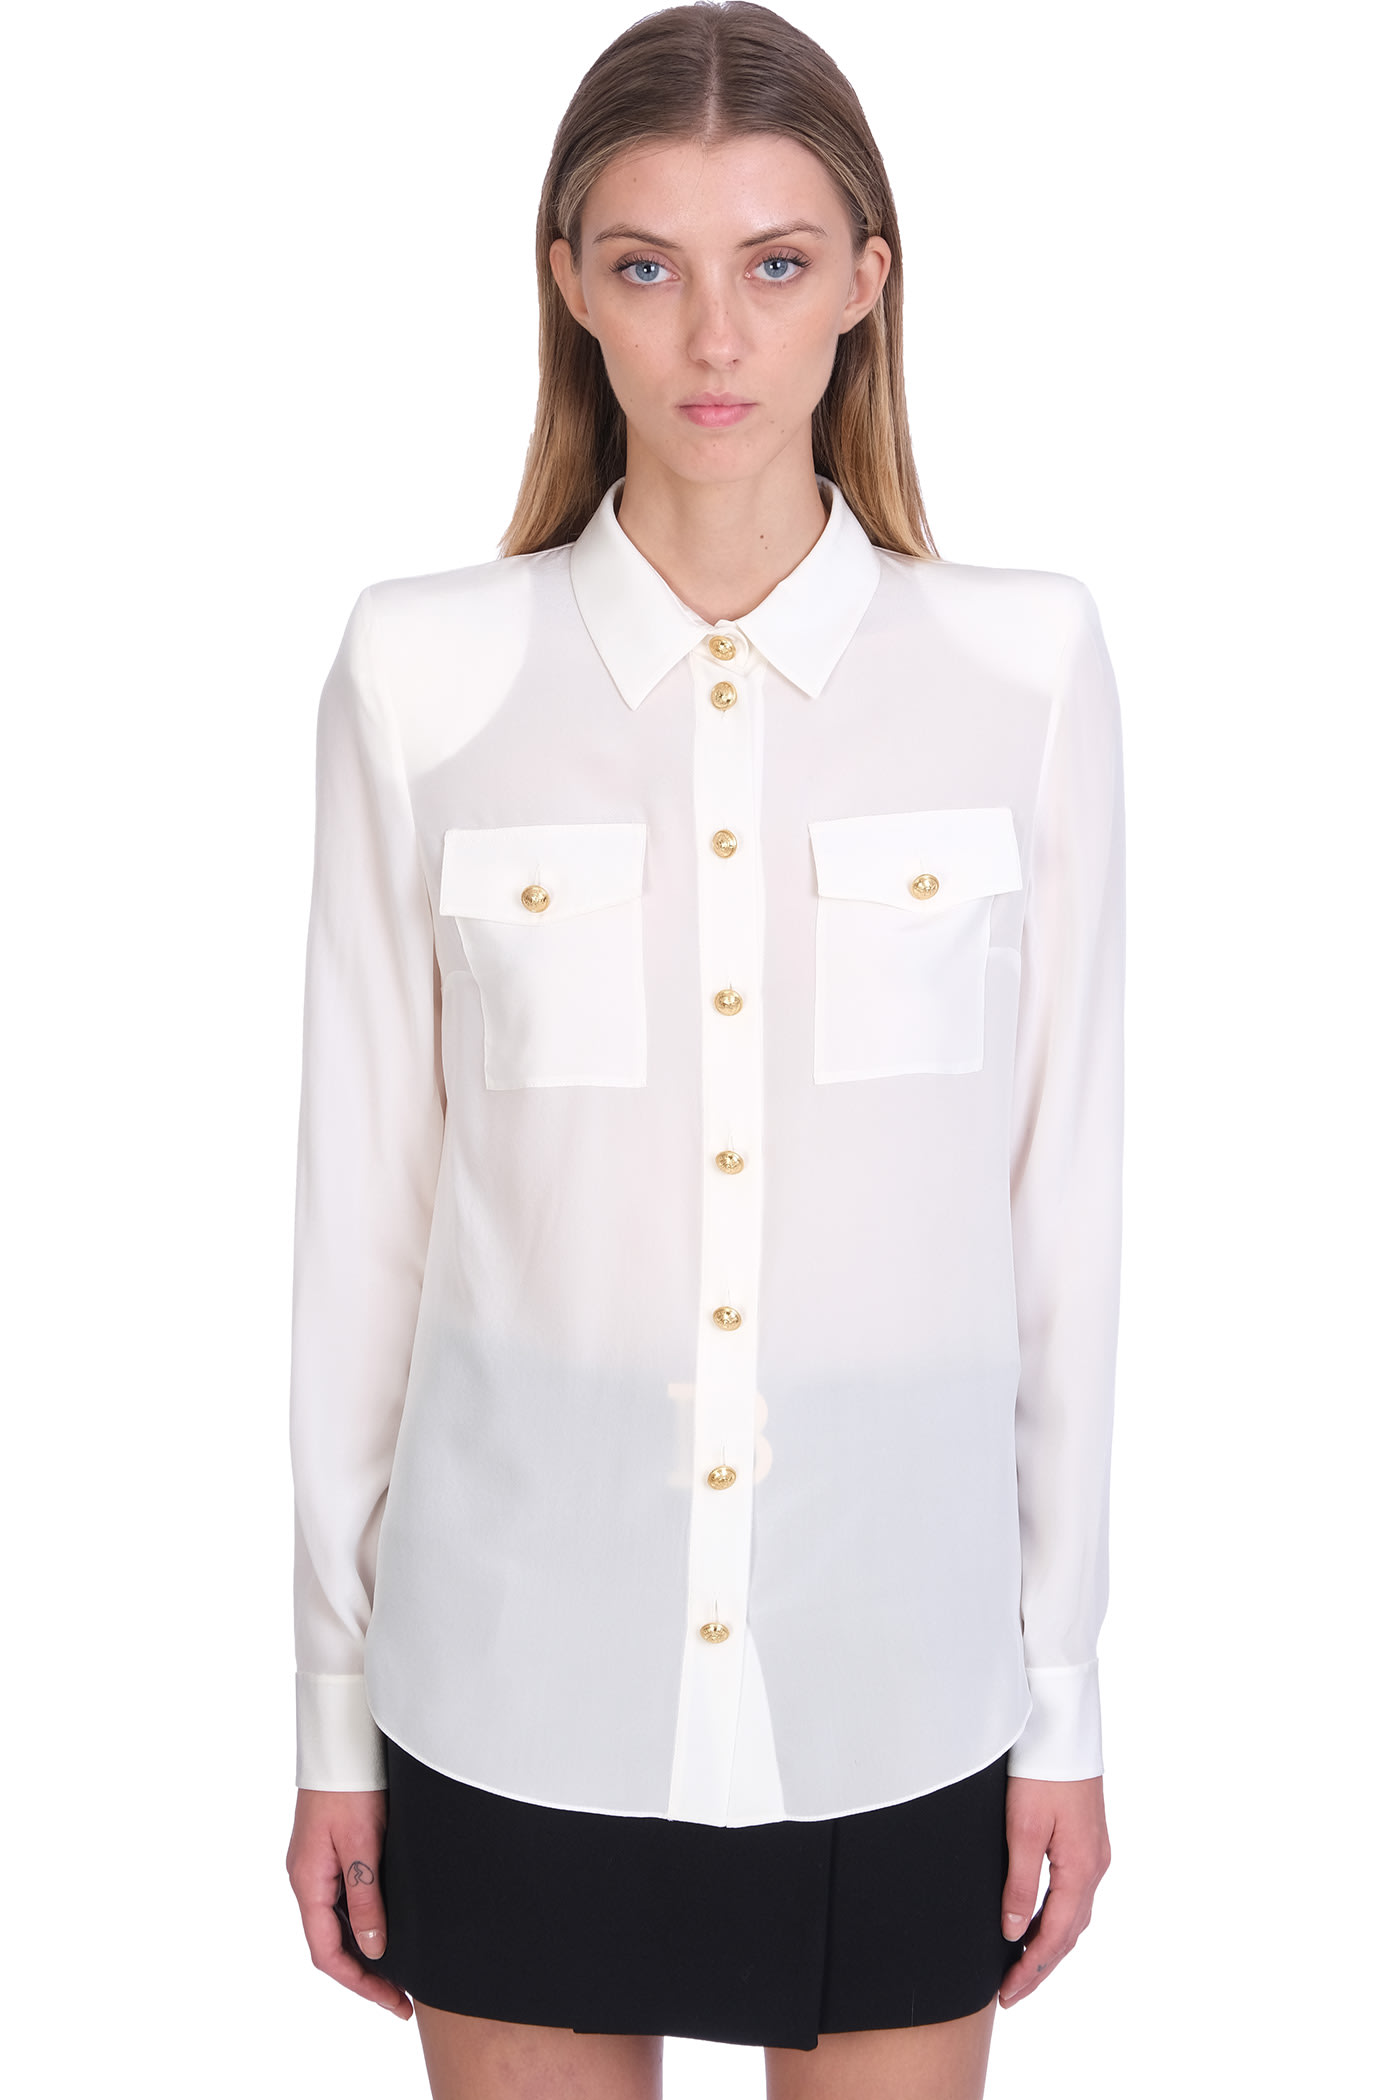 Balmain Shirt In White Silk